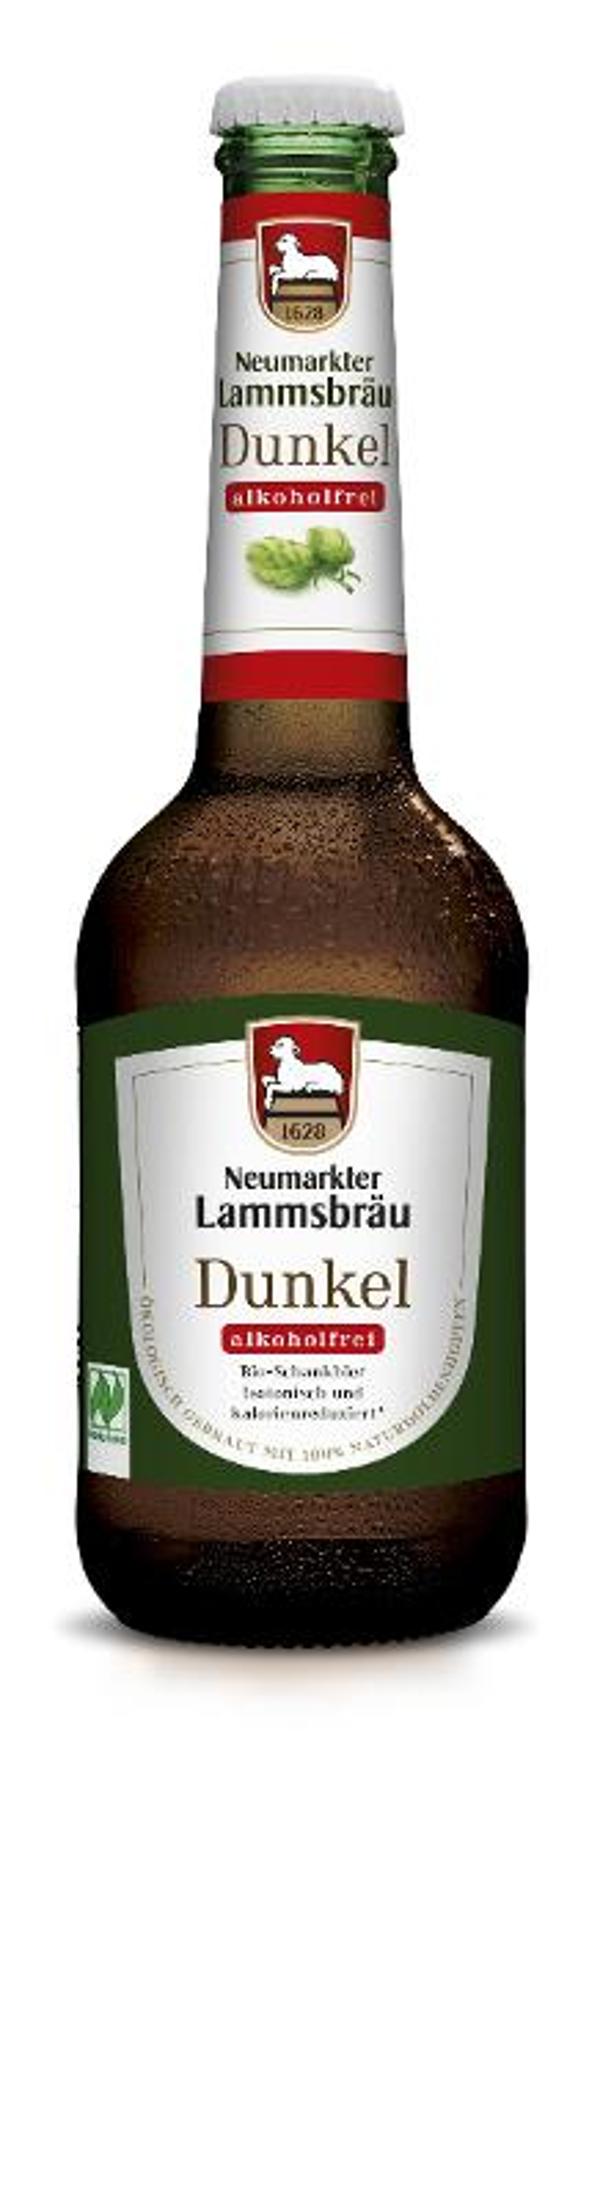 Produktfoto zu Bier Dunkel alkoholfrei 0,33 l Neumarkter Lammsbräu